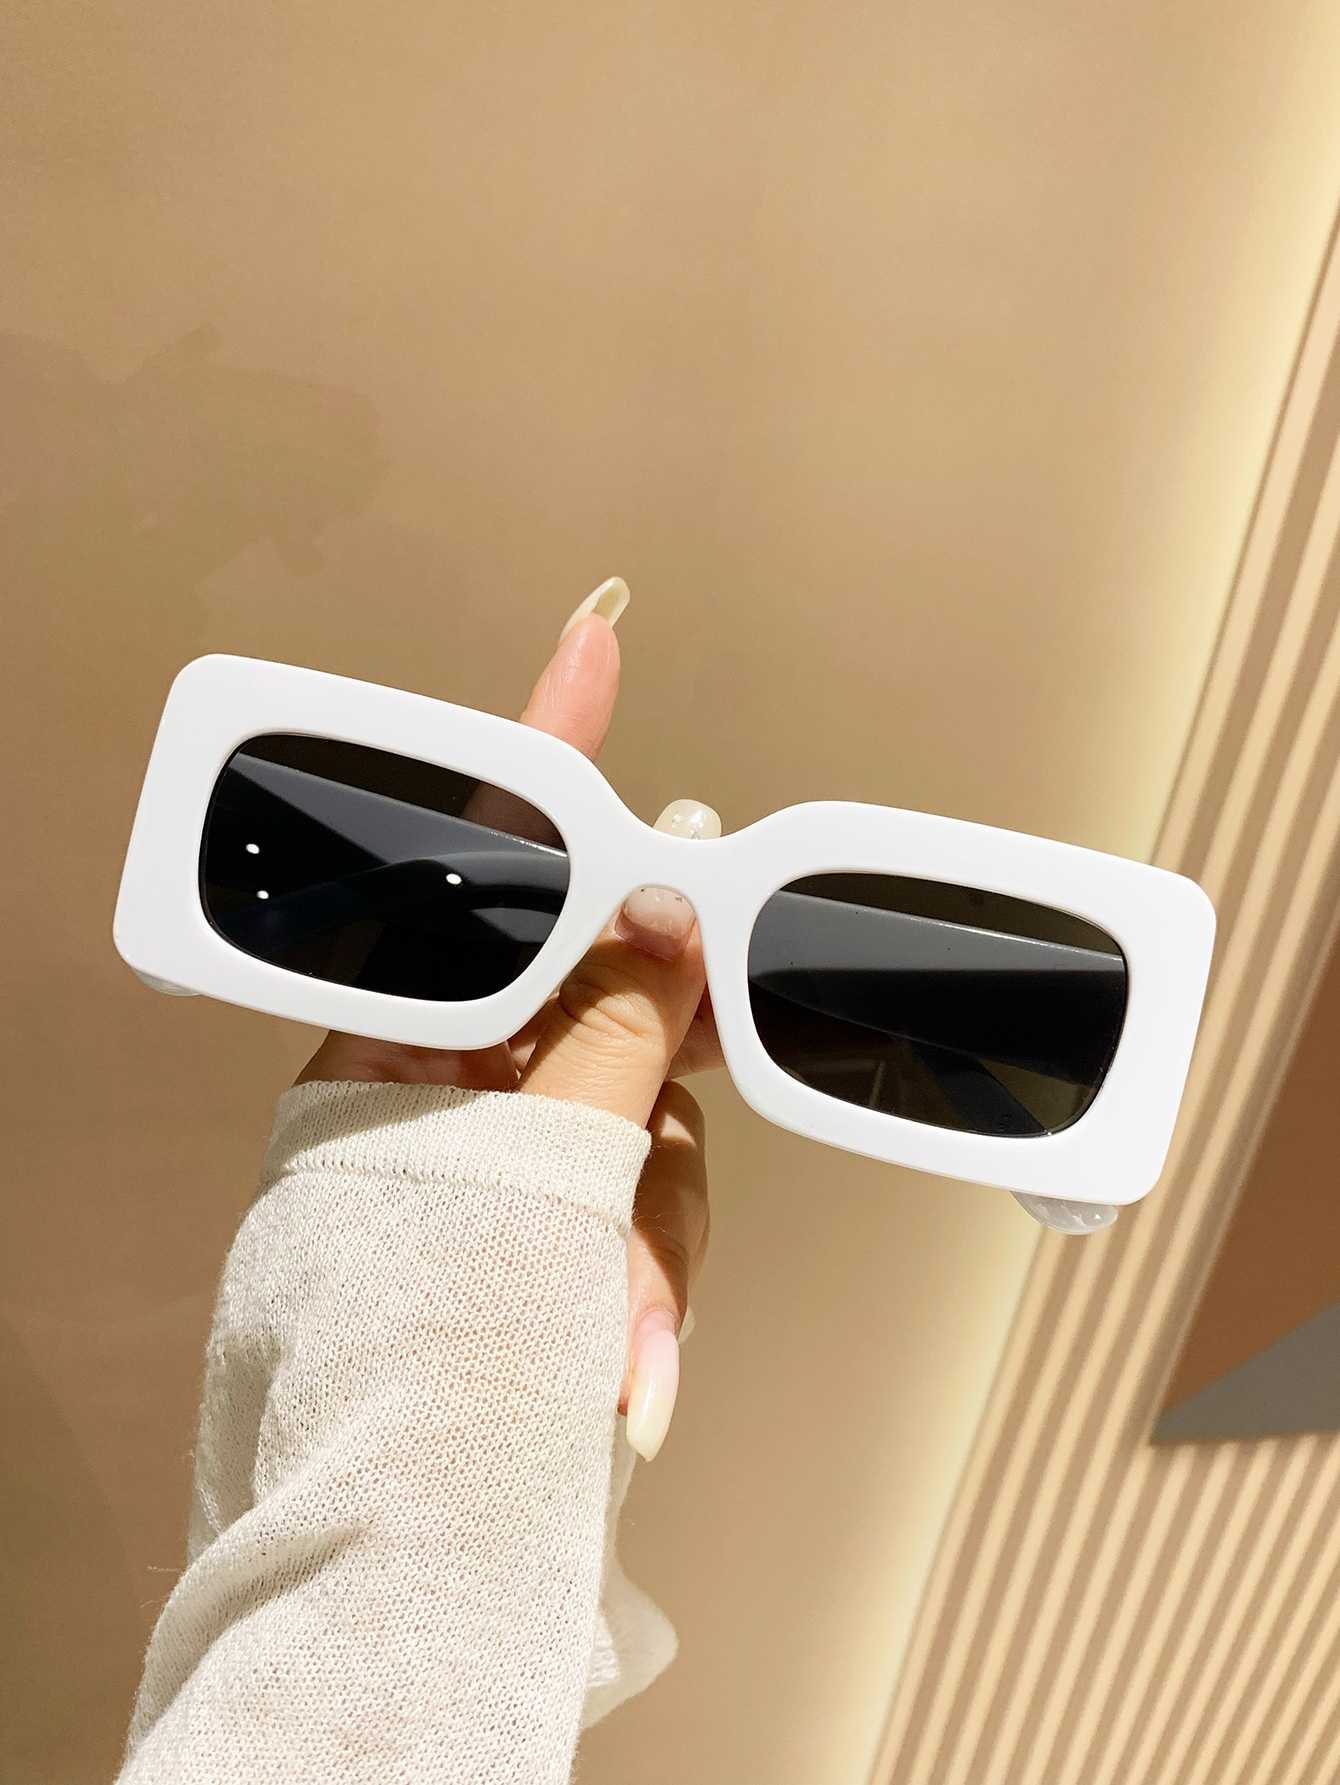 1 шт. Маленькие черные модные солнцезащитные очки квадратной формы в пластиковой рамке для защиты от солнца на пляже солнцезащитные очки для собак модные складные очки для защиты летних питомцев аксессуары для защиты от солнца